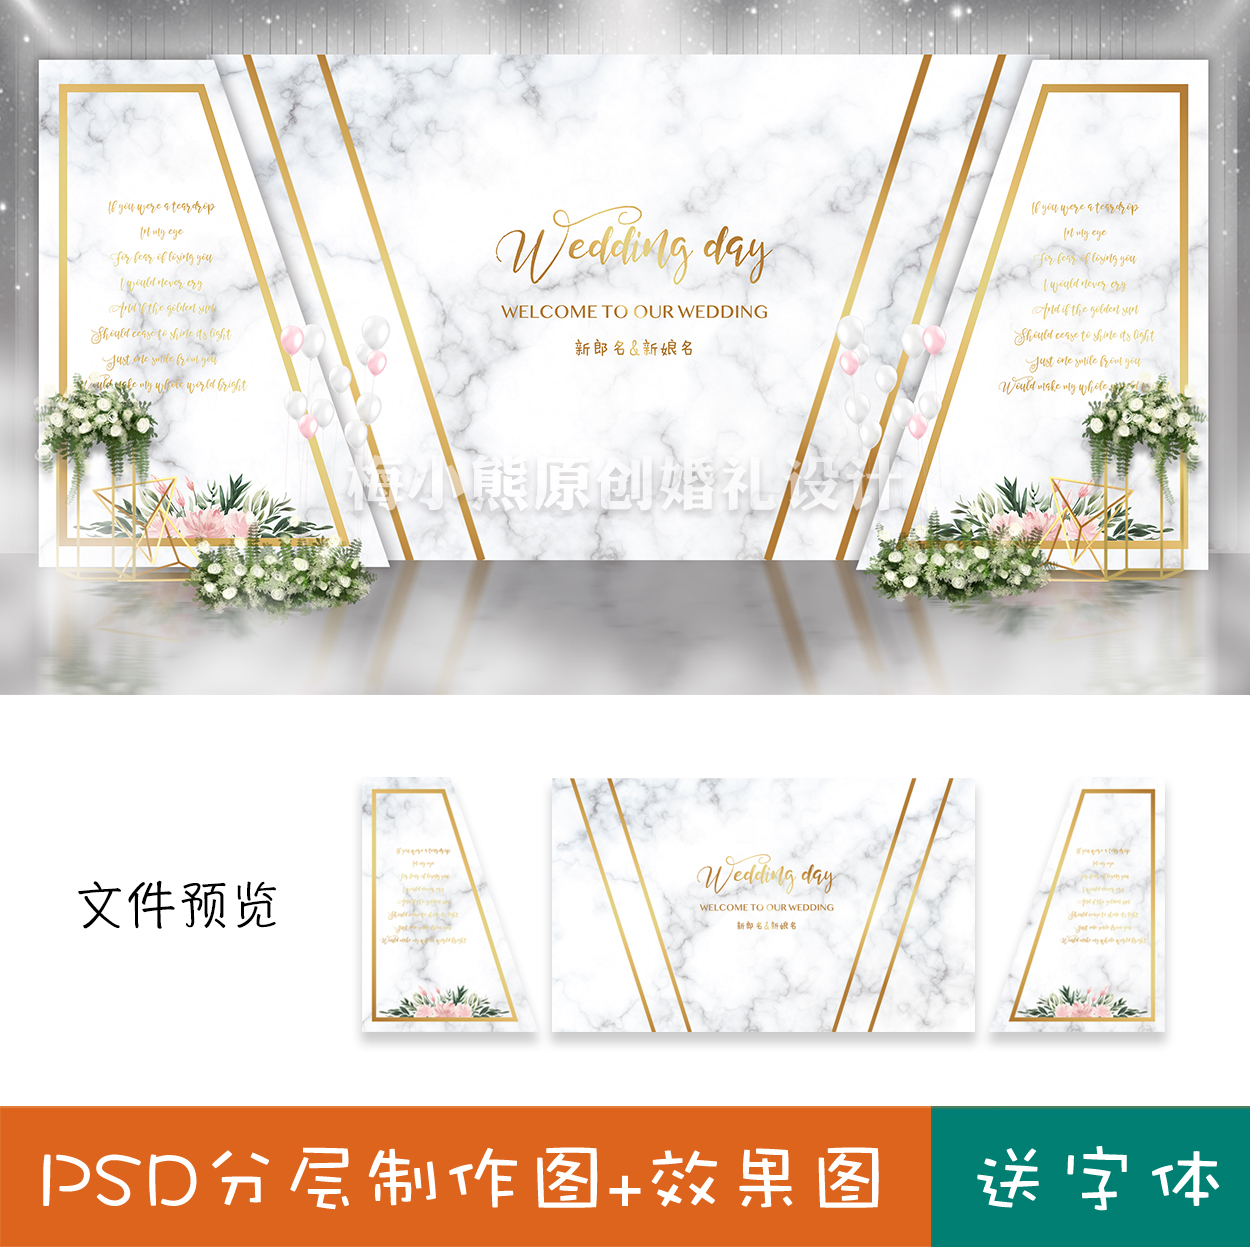 白色大理石清新婚礼现场布置策划婚庆背景喷绘设计效果图psd素材